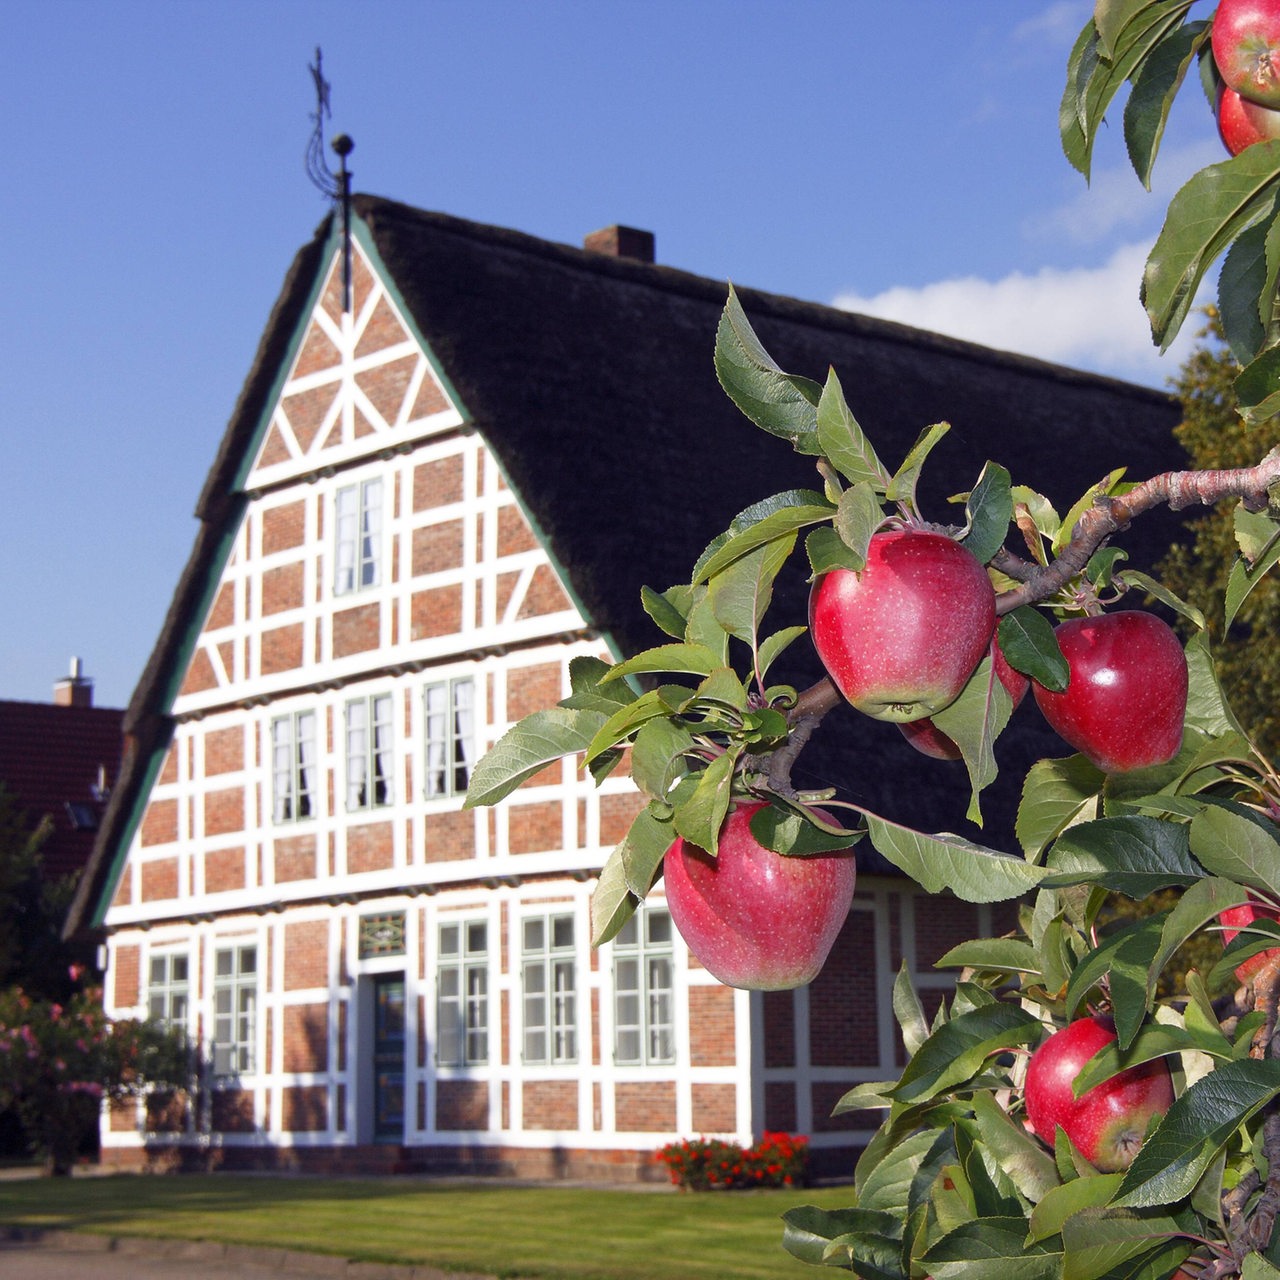 Reife rote Äpfel an einem Apfelbaum vor historischem Fachwerkhaus im Obstanbaugebiet Altes Land bei Hamburg (Archivbild)